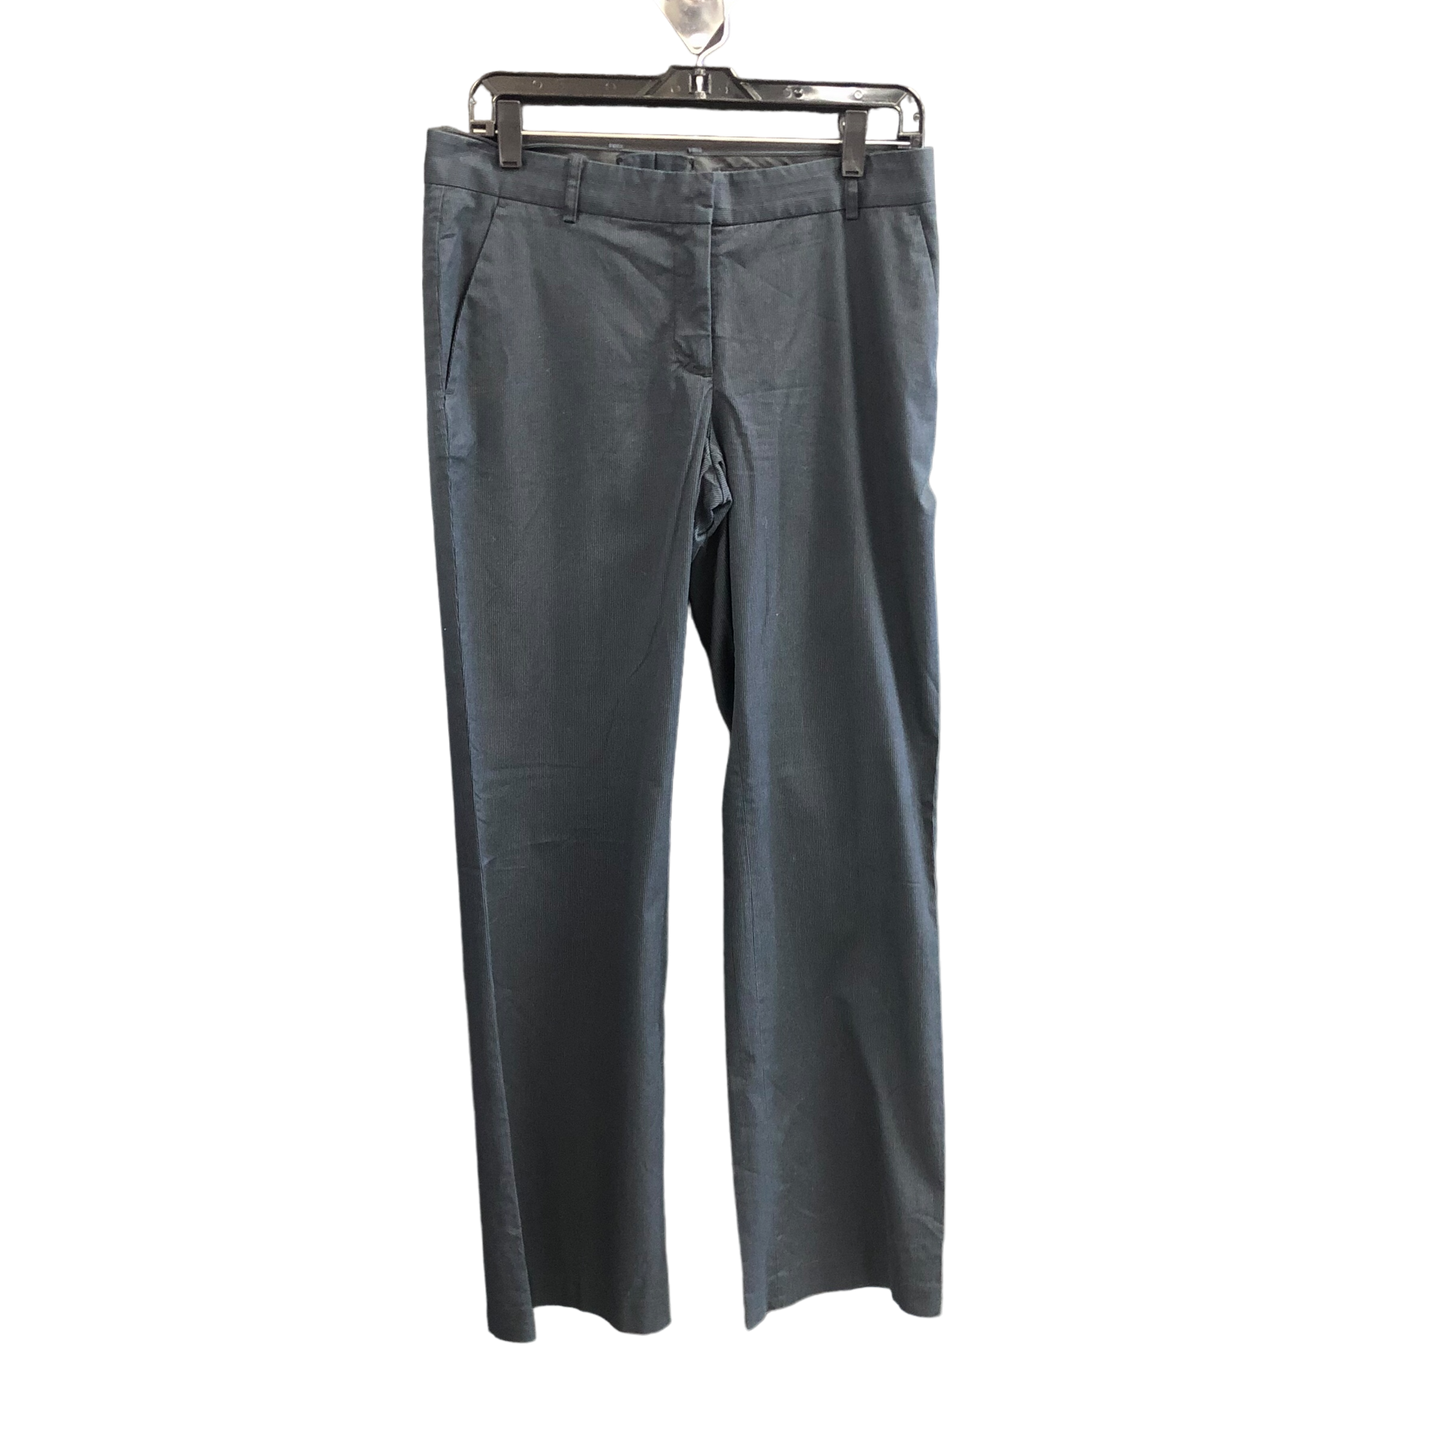 Blue Pants Work/dress H&m, Size 8